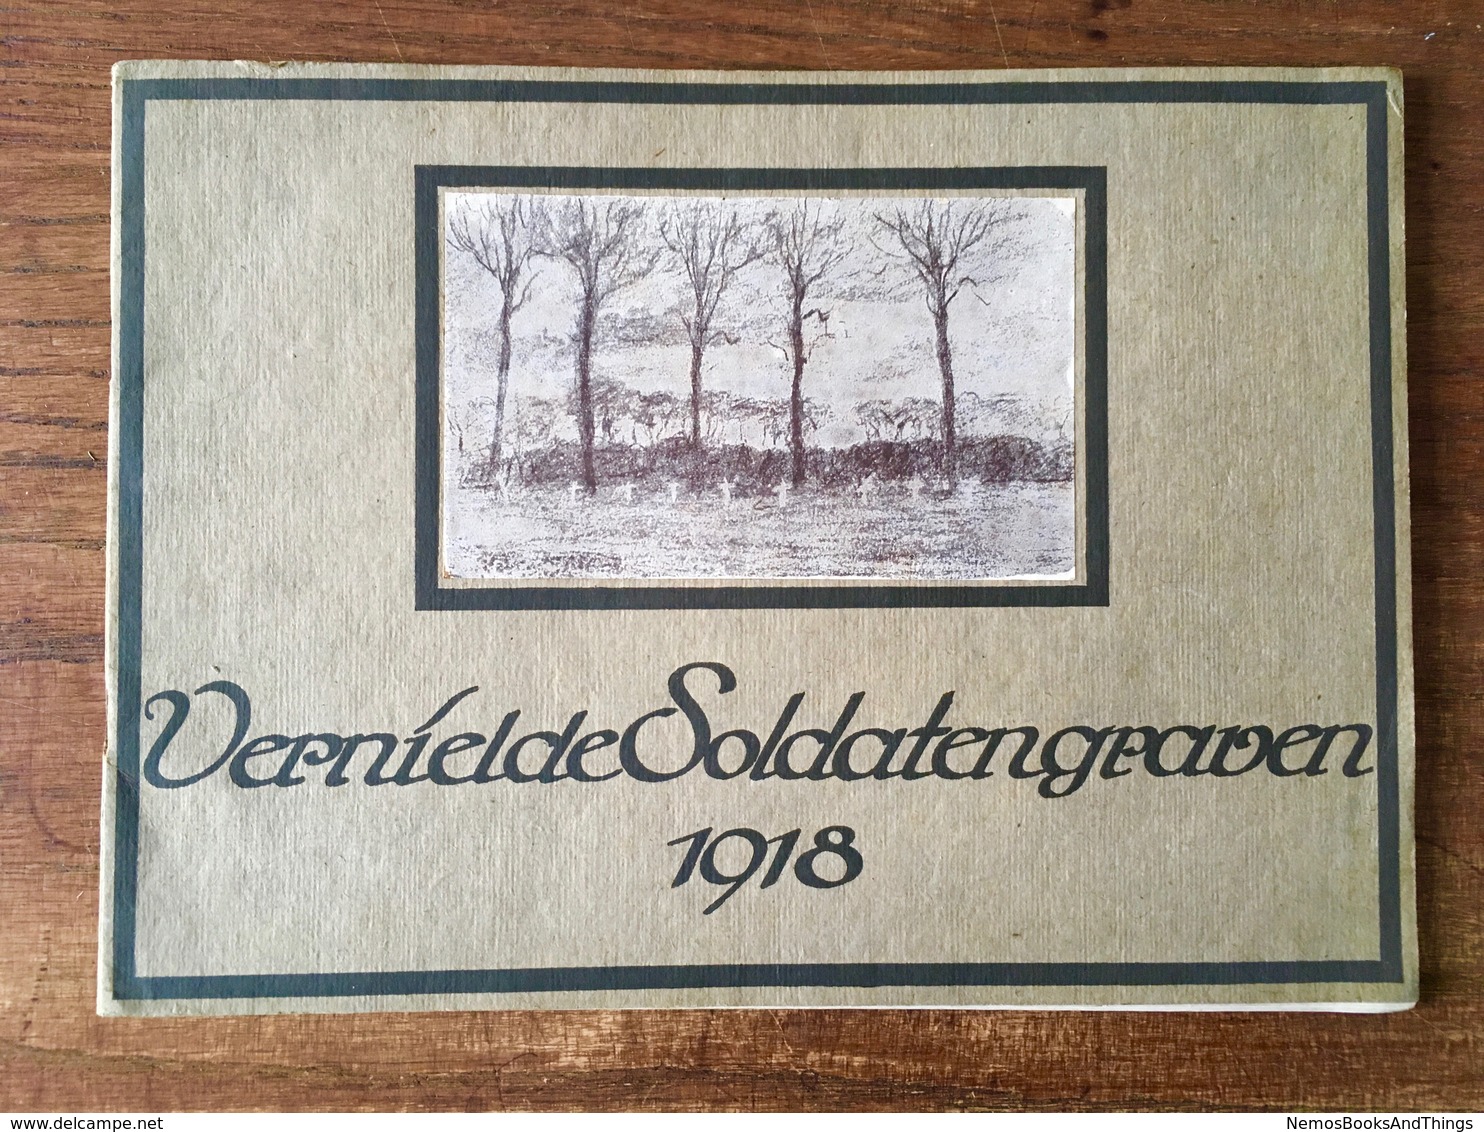 Vernielde Soldatengraven 1918 - Guerre 1914-18